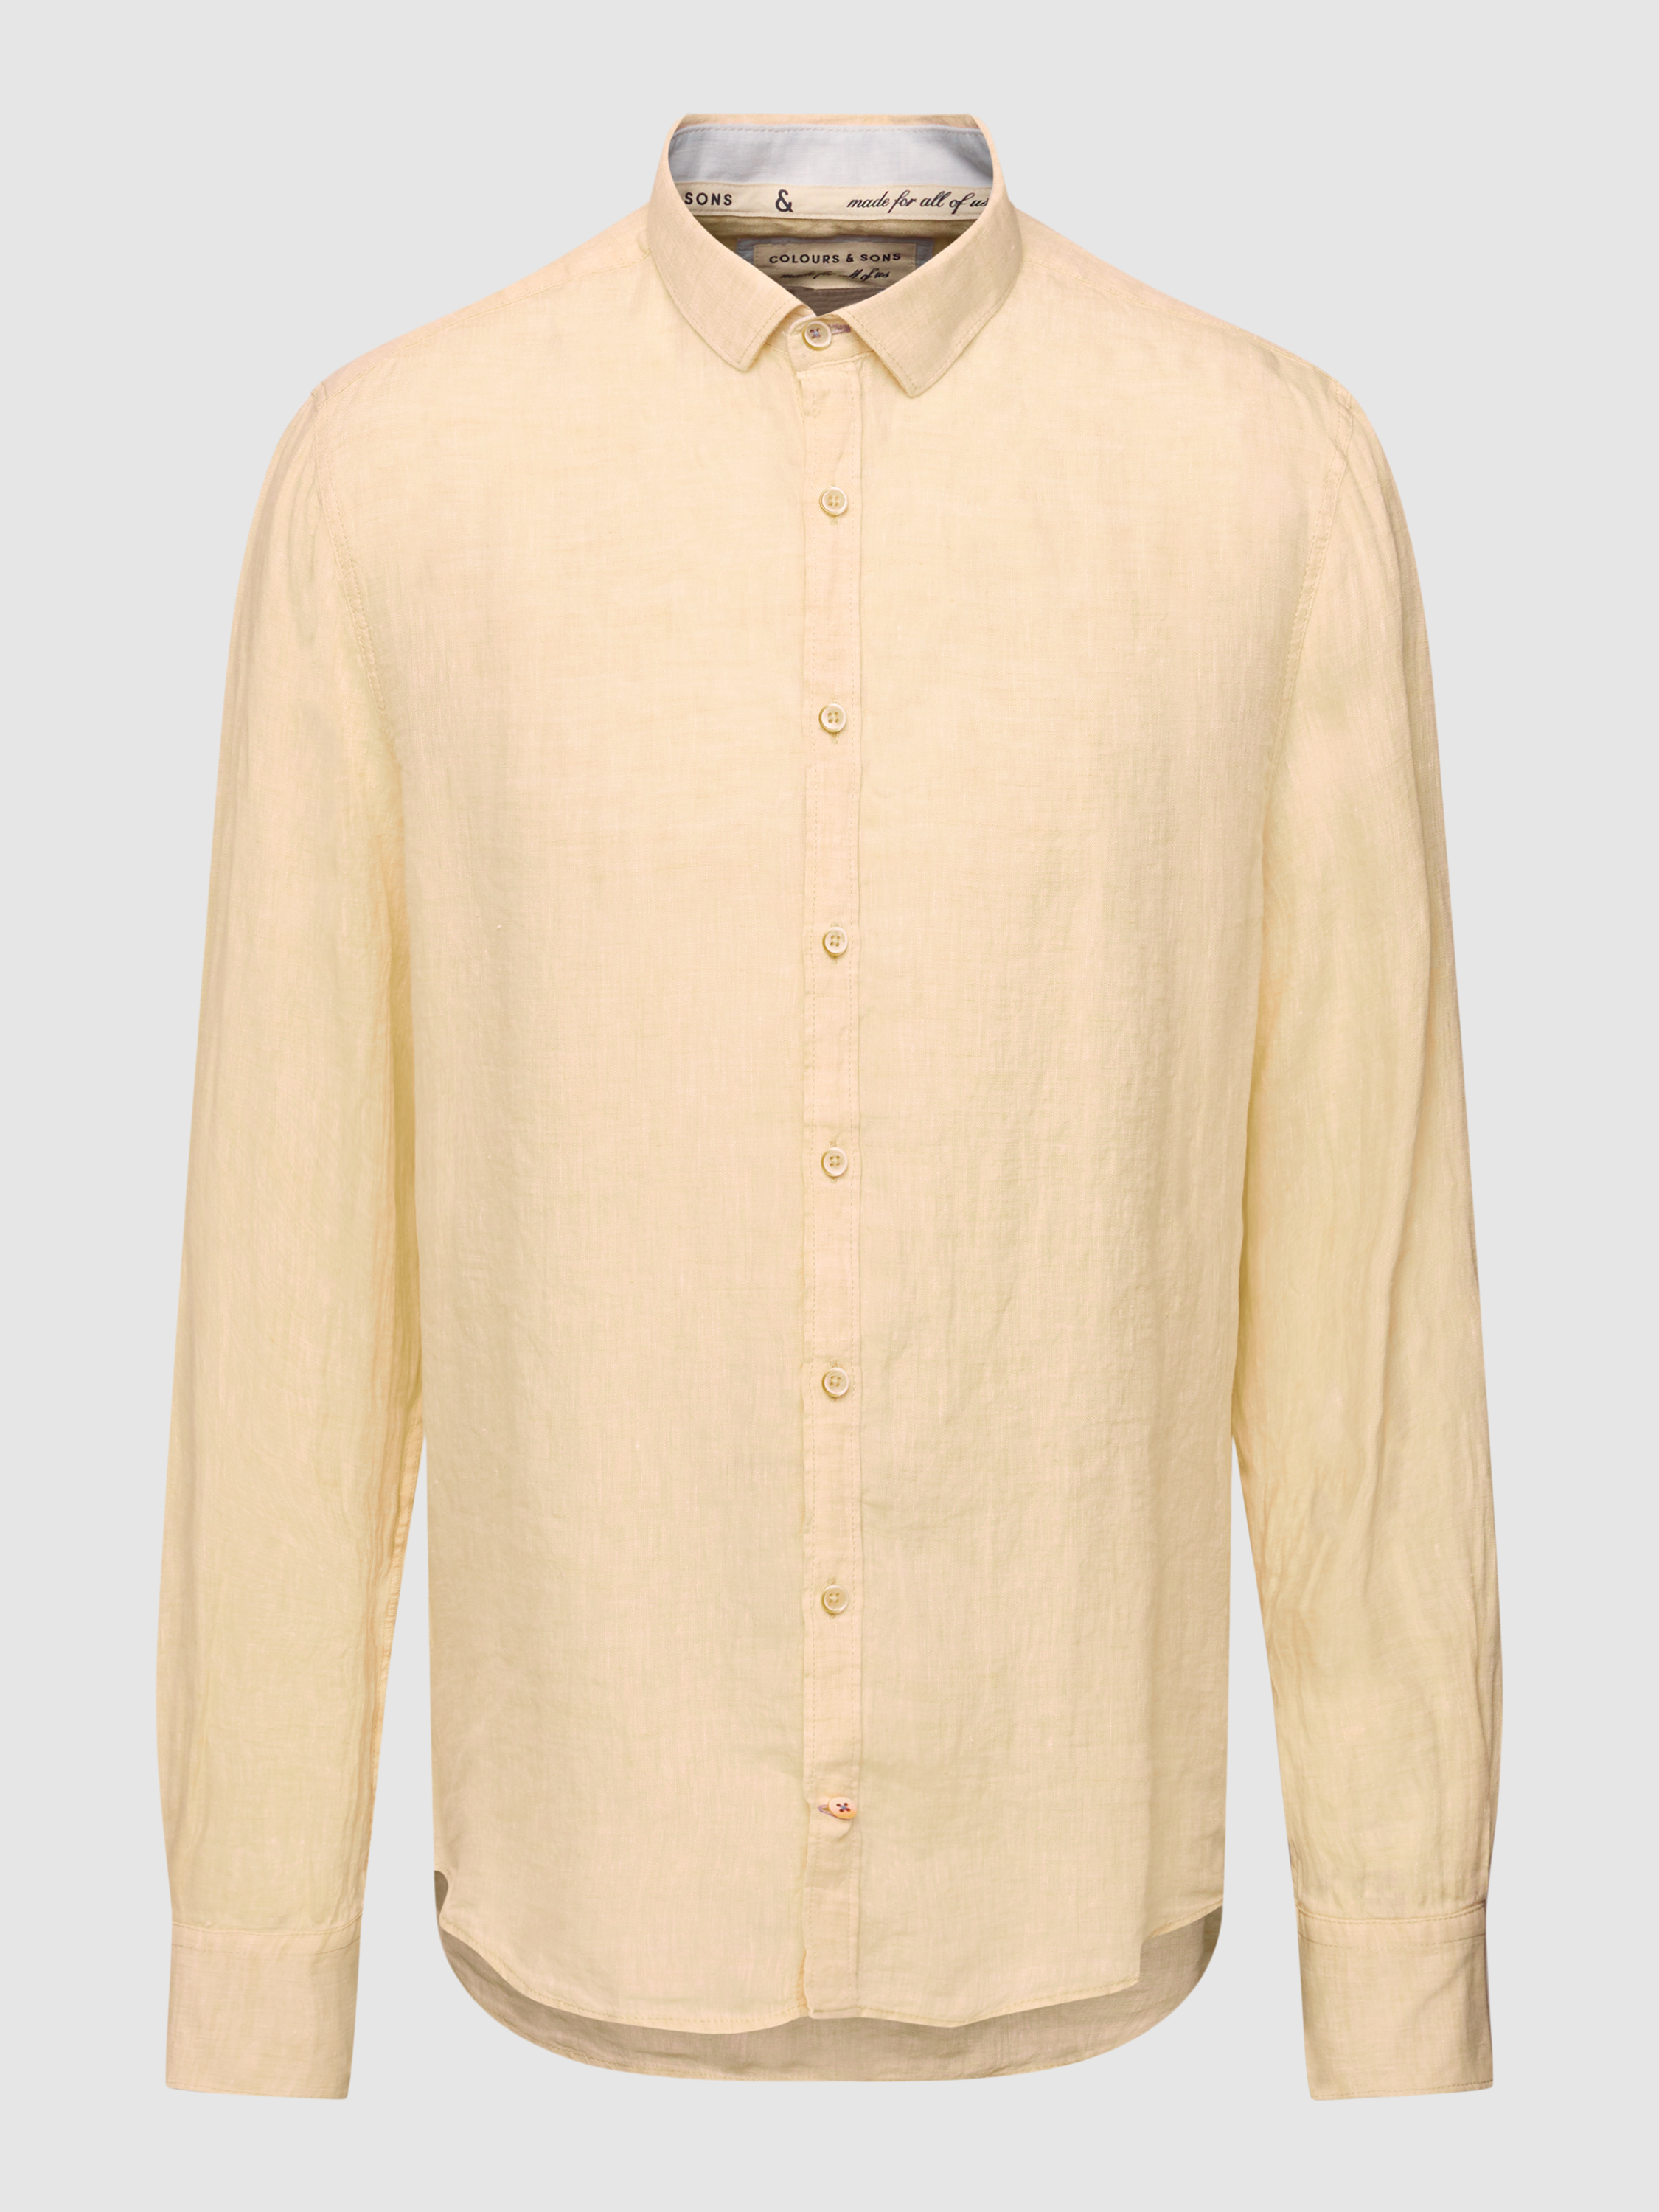 Рубашка мужская Colours & sons 1780362 желтая S (доставка из-за рубежа)